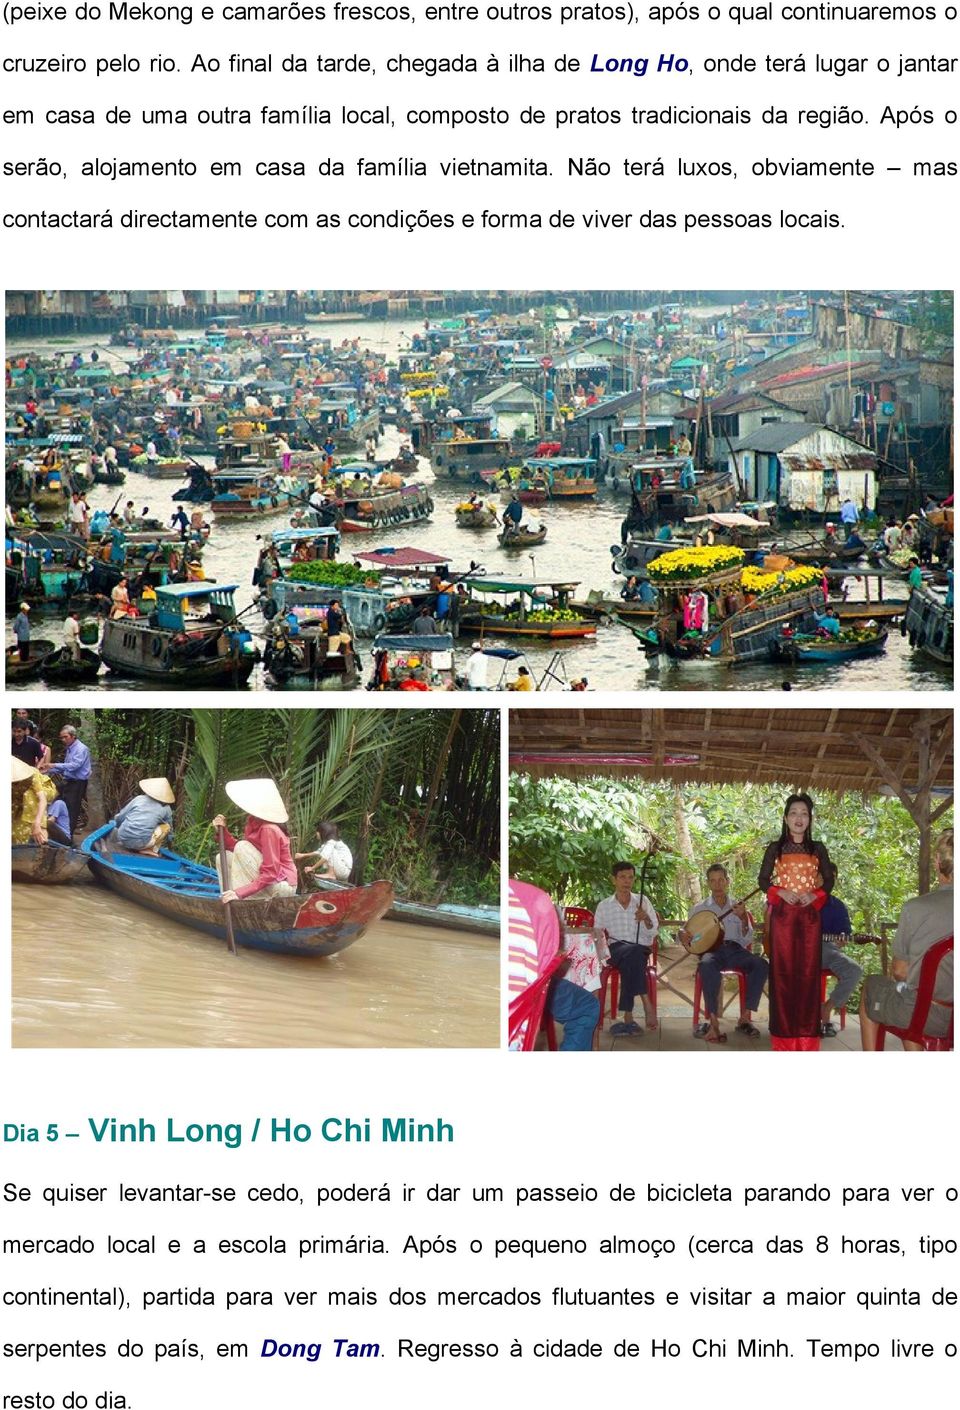 Após o serão, alojamento em casa da família vietnamita. Não terá luxos, obviamente mas contactará directamente com as condições e forma de viver das pessoas locais.